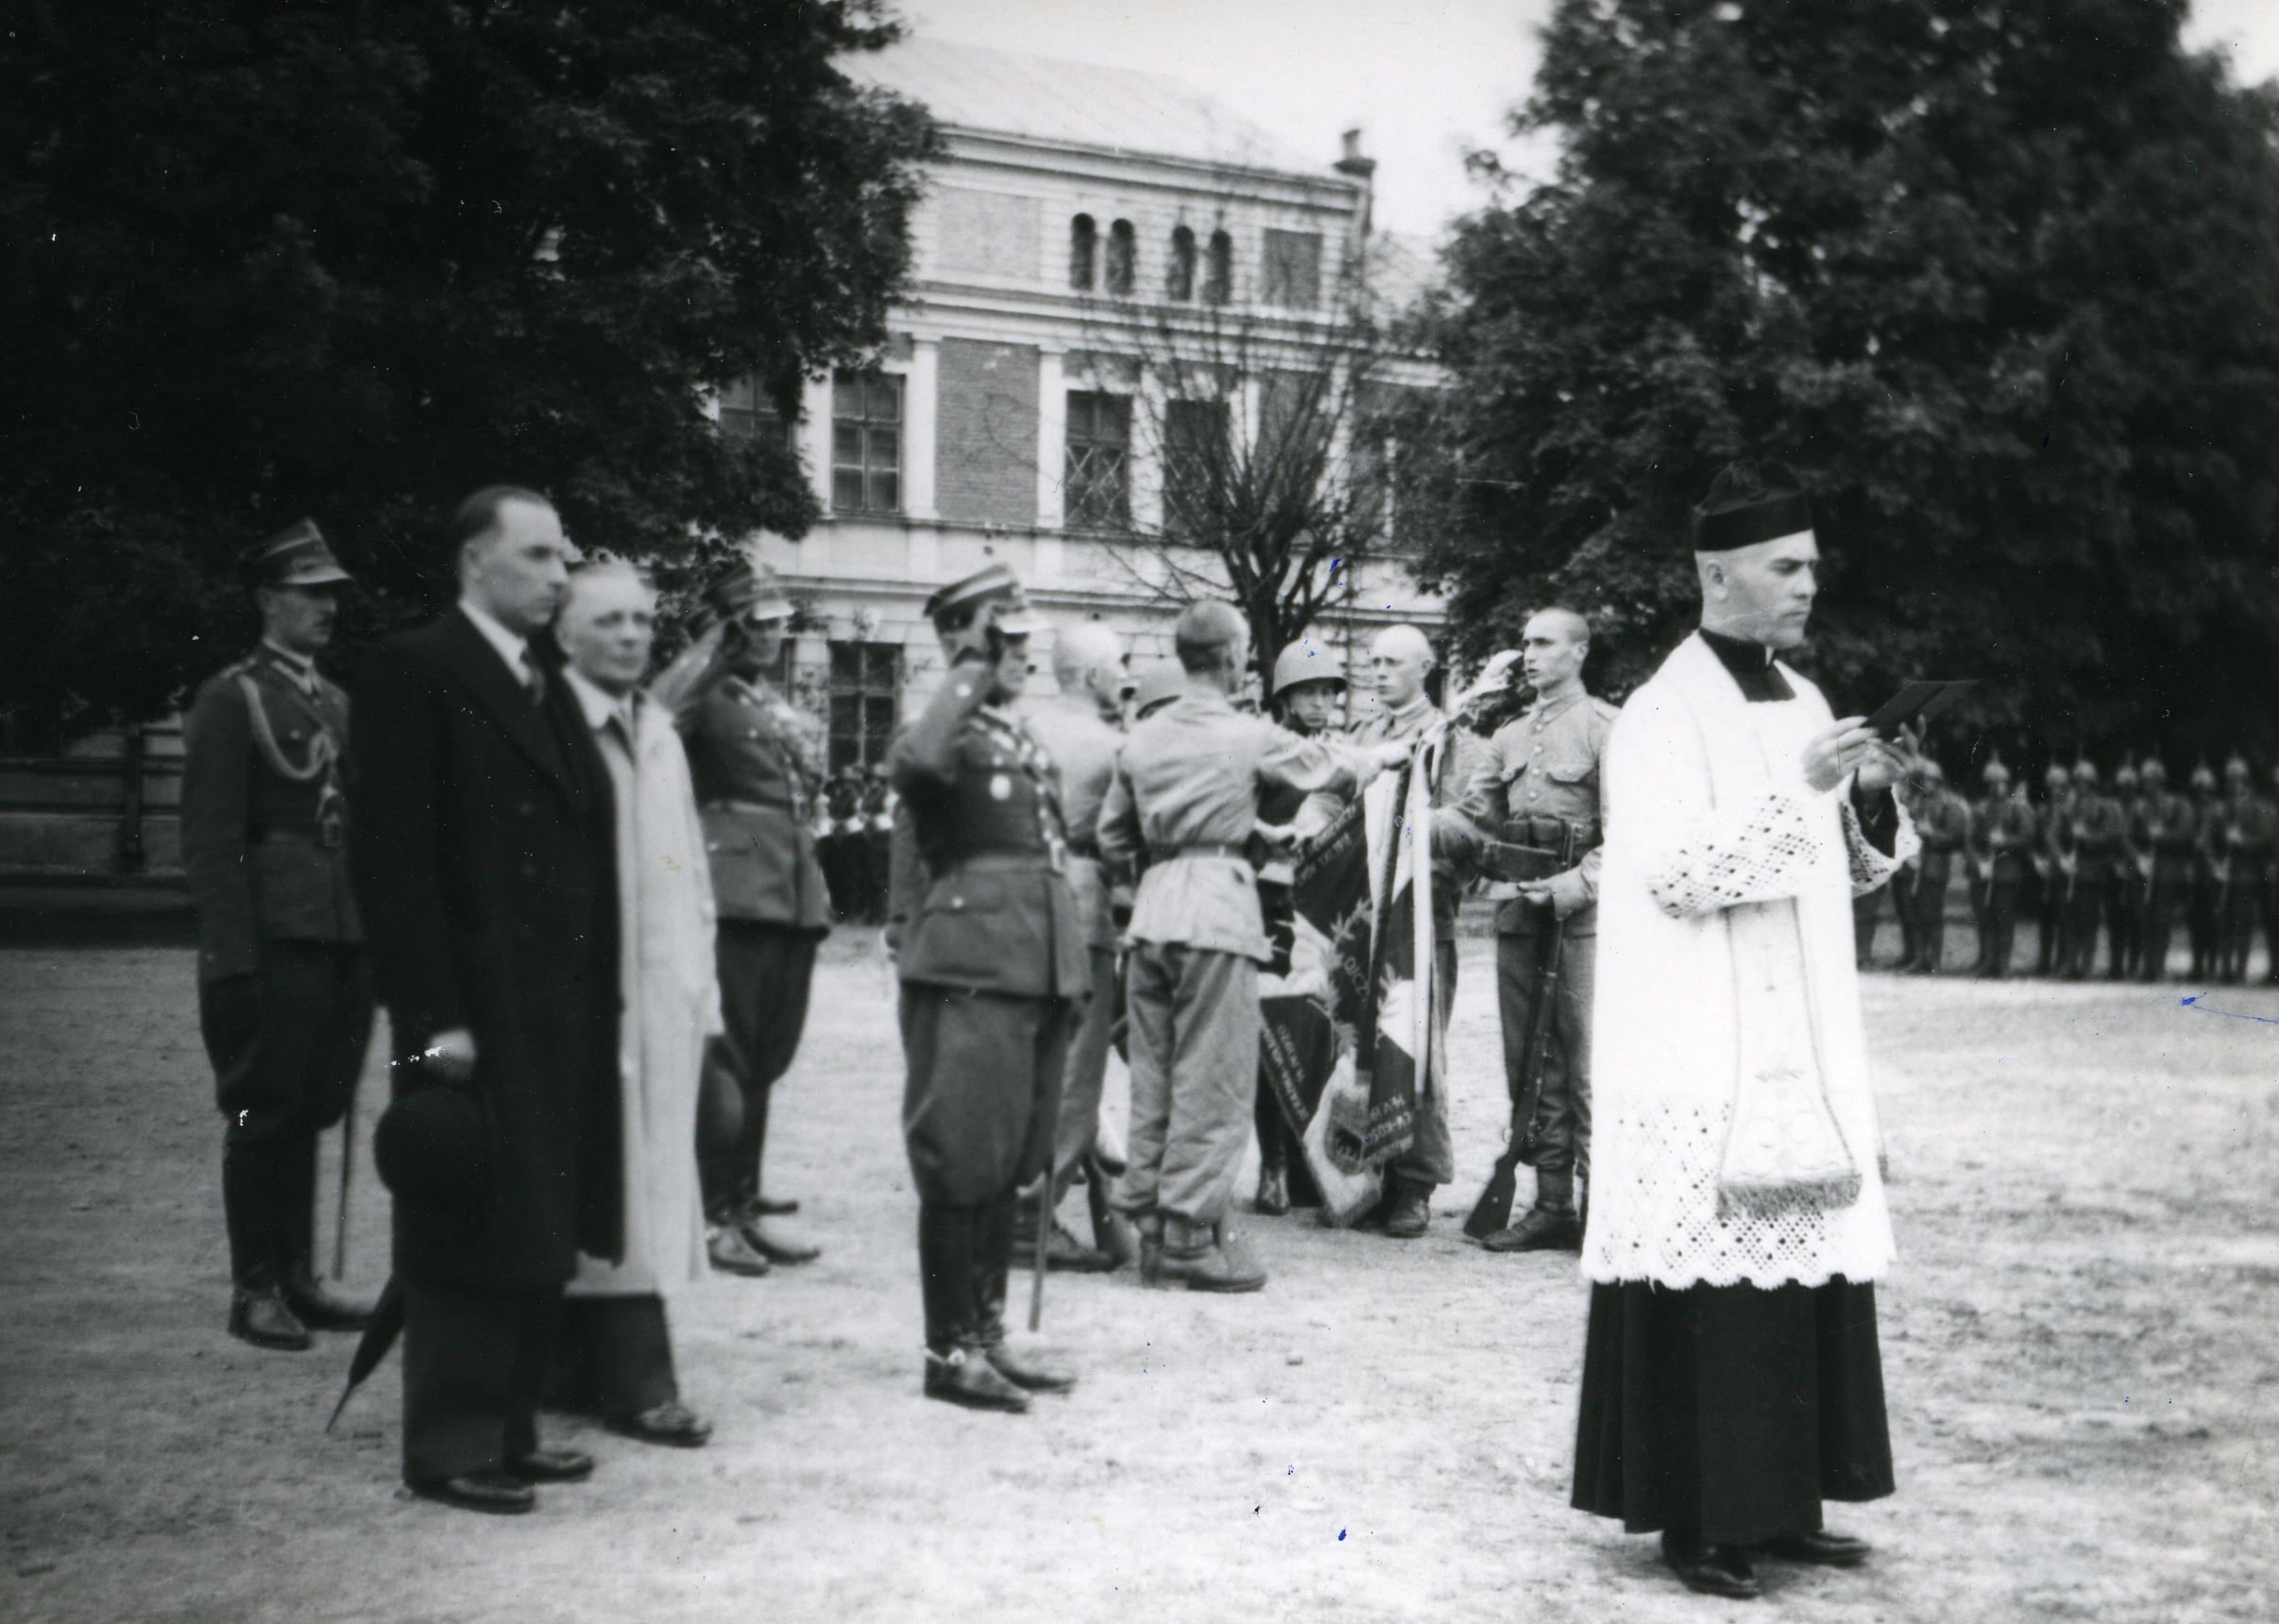 Ks. Stanisław Kontek podczas przysięgi, prawdopodobnie w jednej z jednostek wojskowych w Przemyślu.